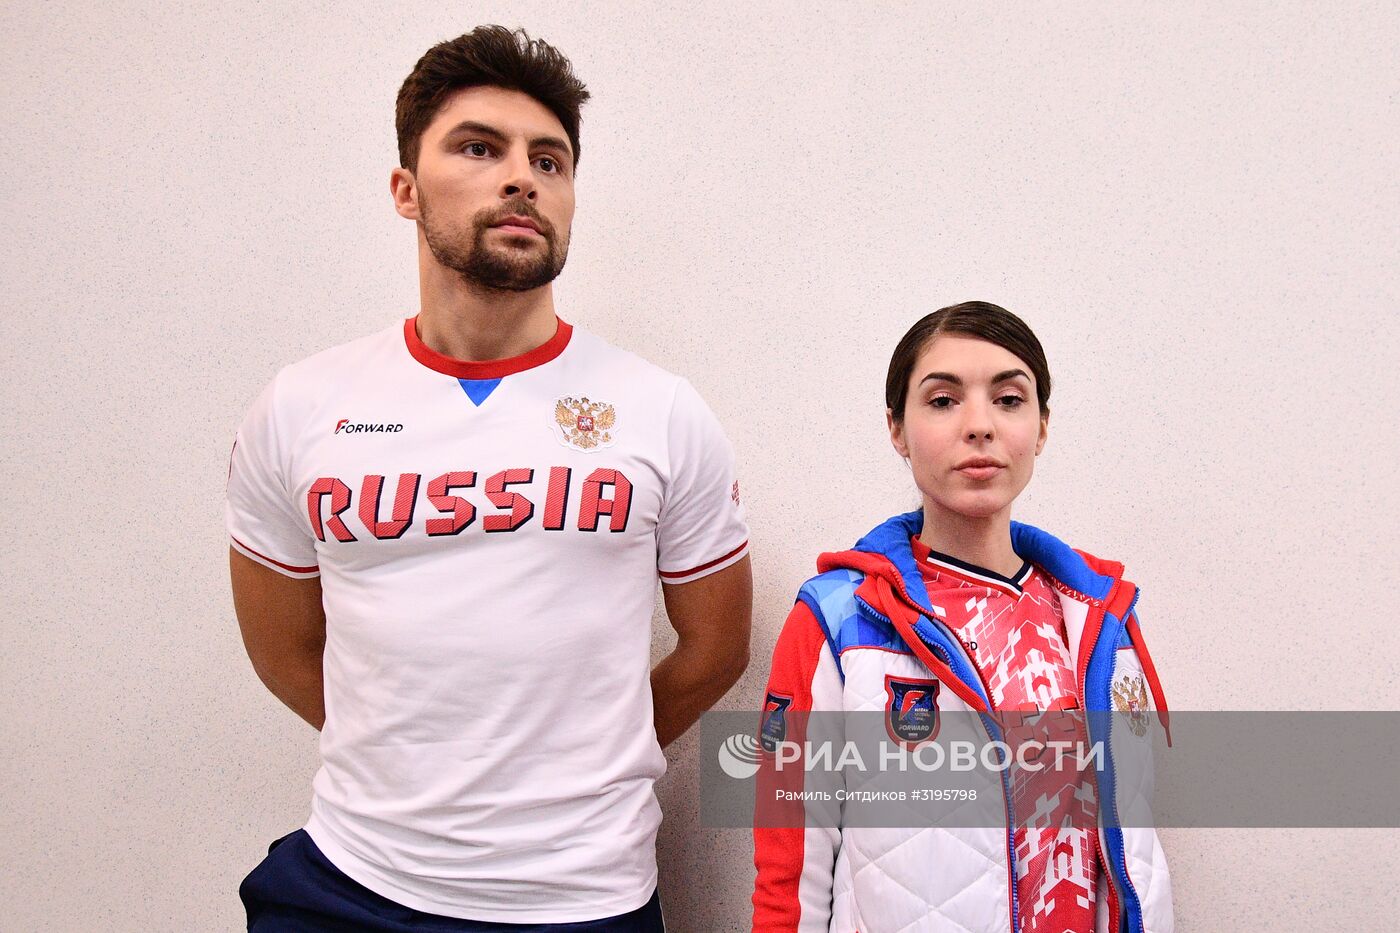 Новая коллекция экипировки национальных сборных команд России